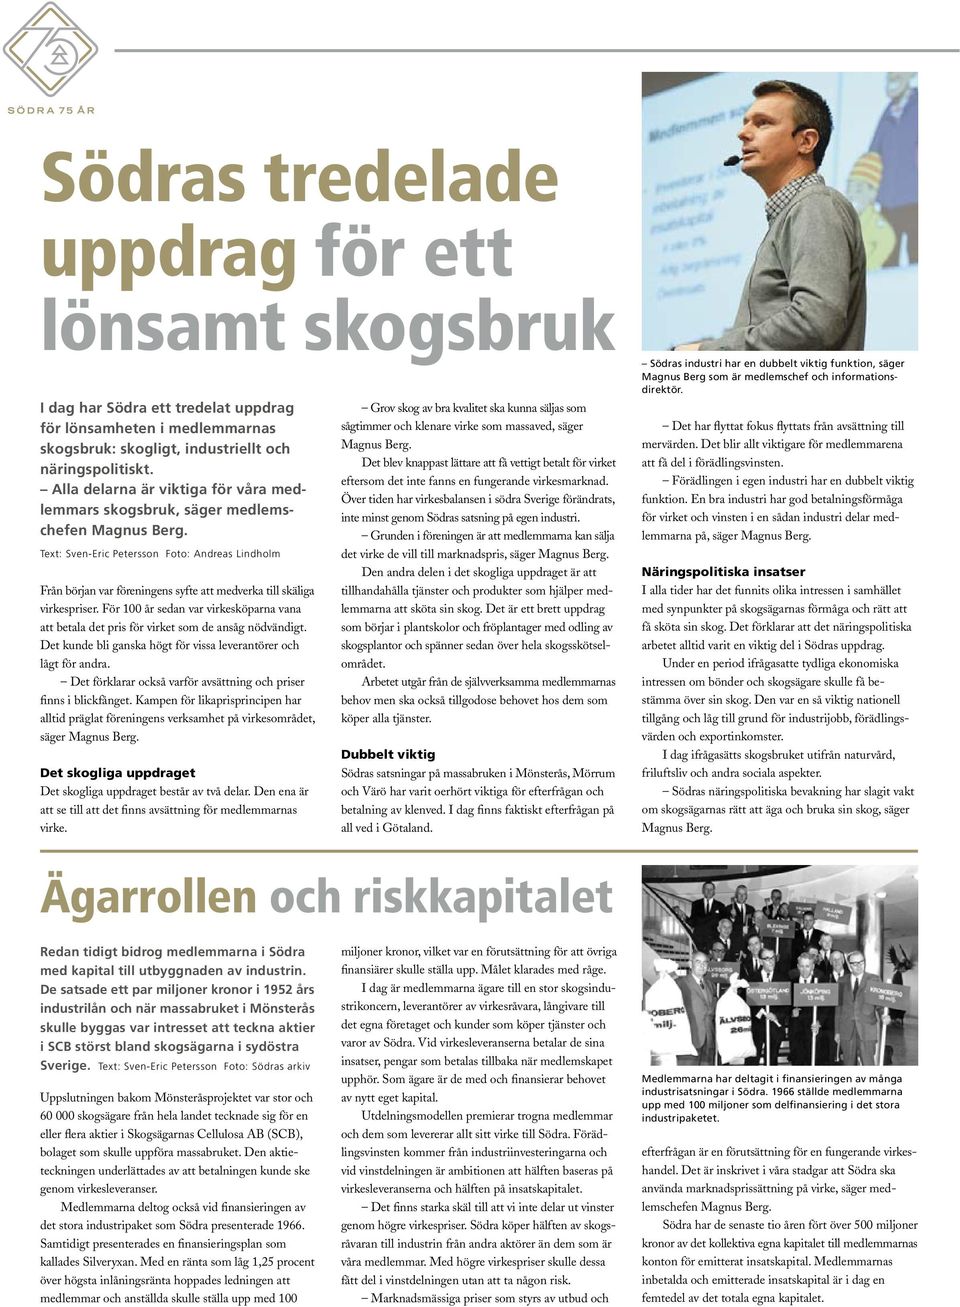 Text: Sven-Eric Petersson Foto: Andreas Lindholm Från början var föreningens syfte att medverka till skäliga virkespriser.